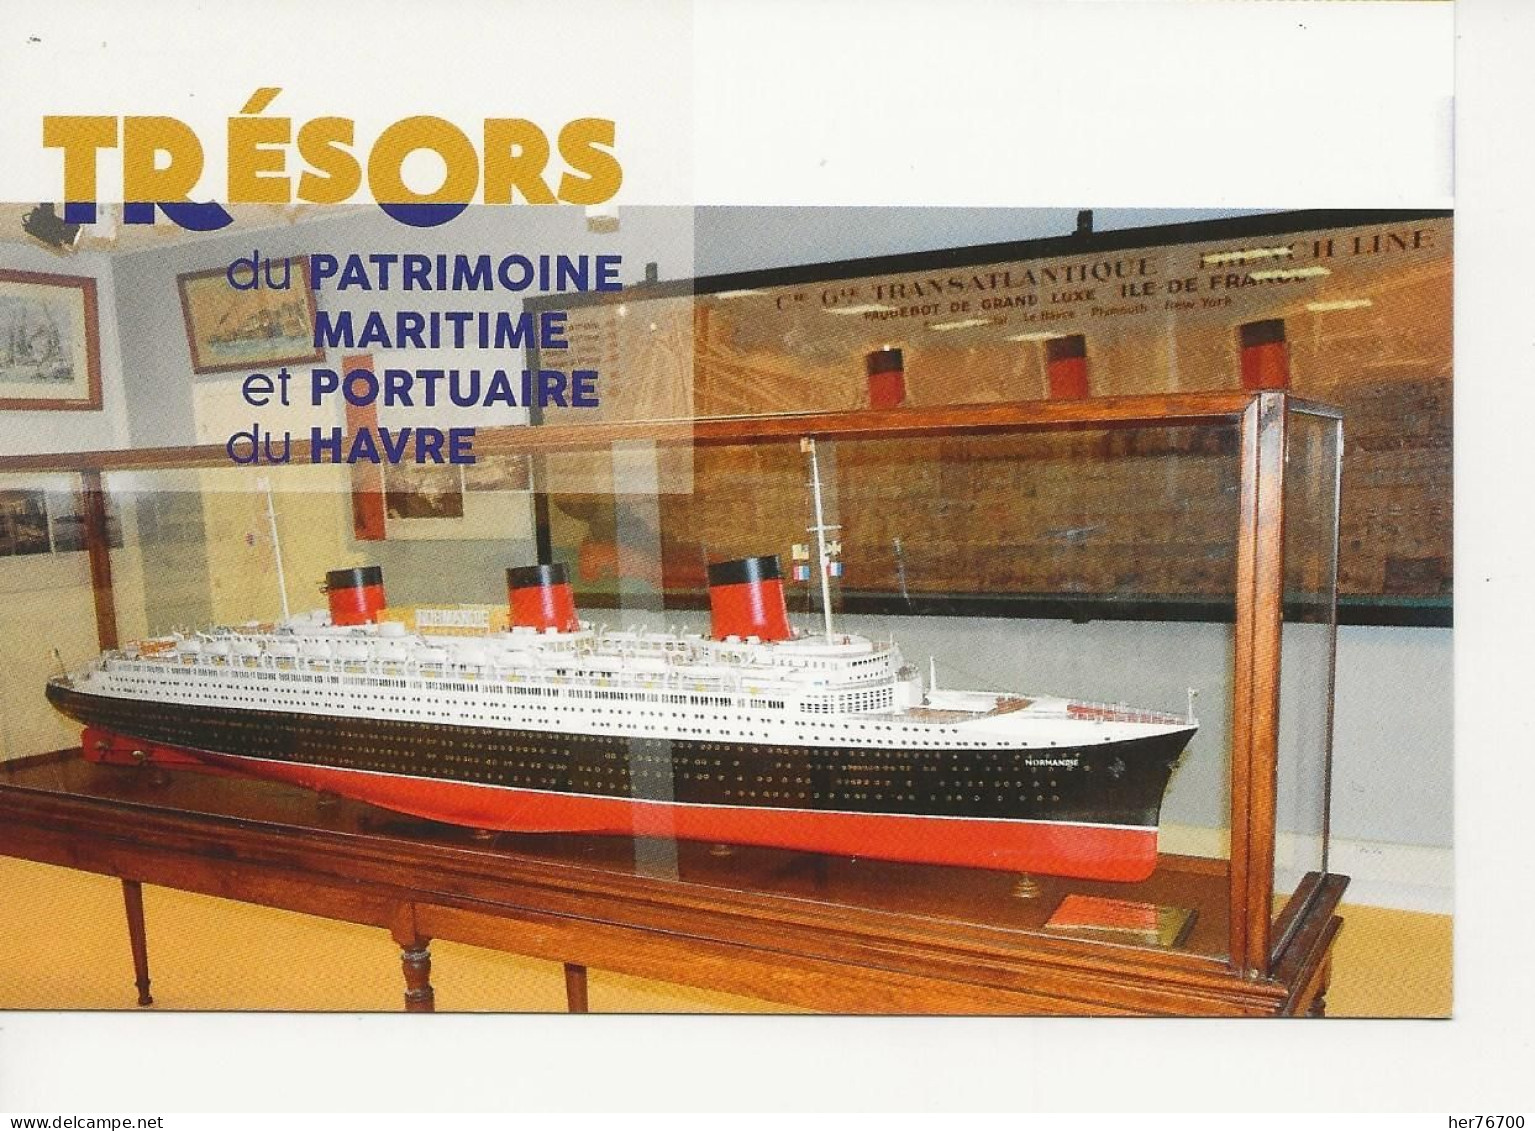 Lot de 7 cartes  représentant les trésors du patrimoine  maritime  et portuaire du Havre